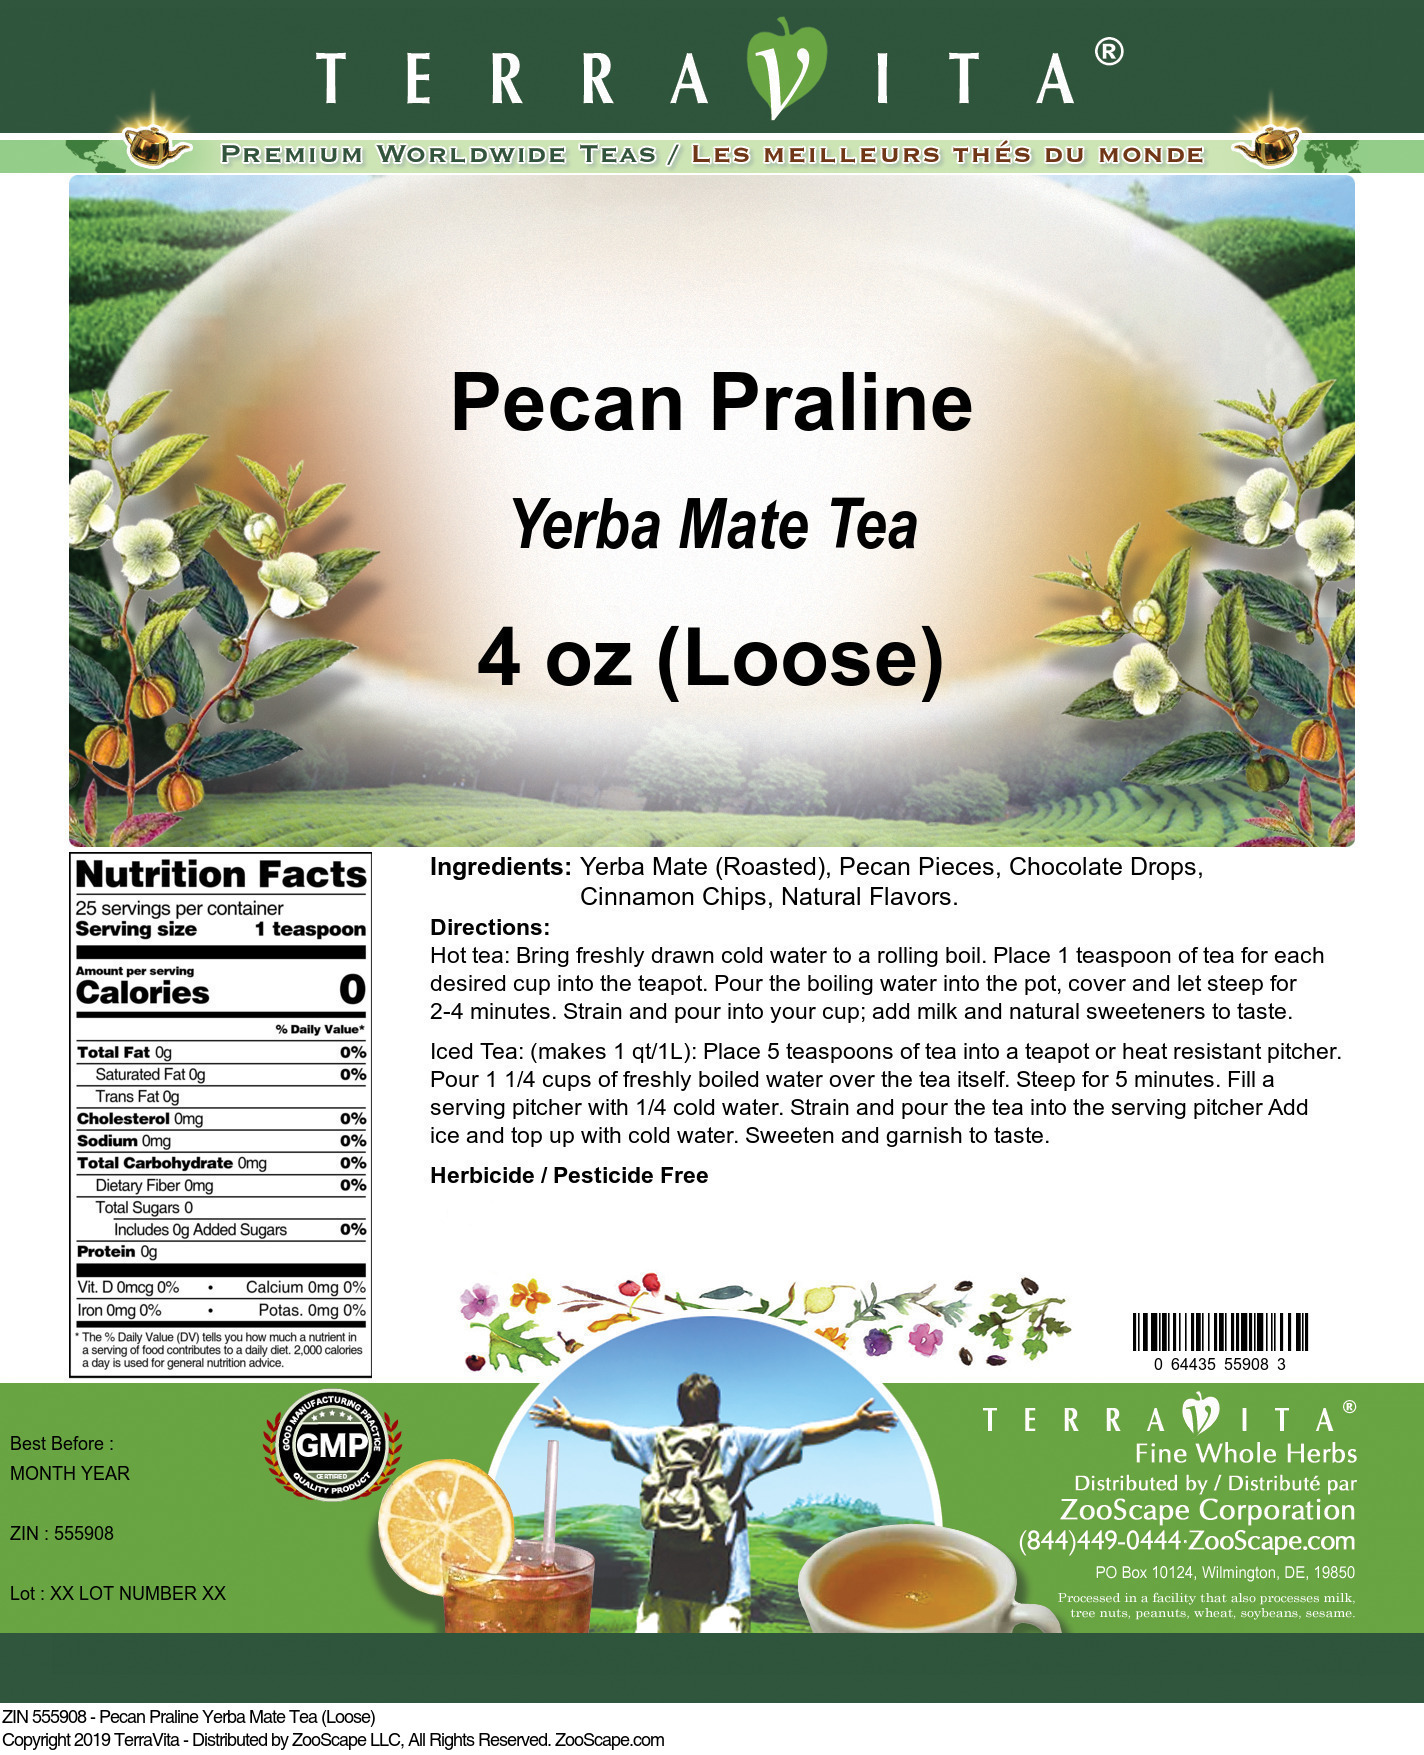 Pecan Praline Yerba Mate Tea (Loose) - Label